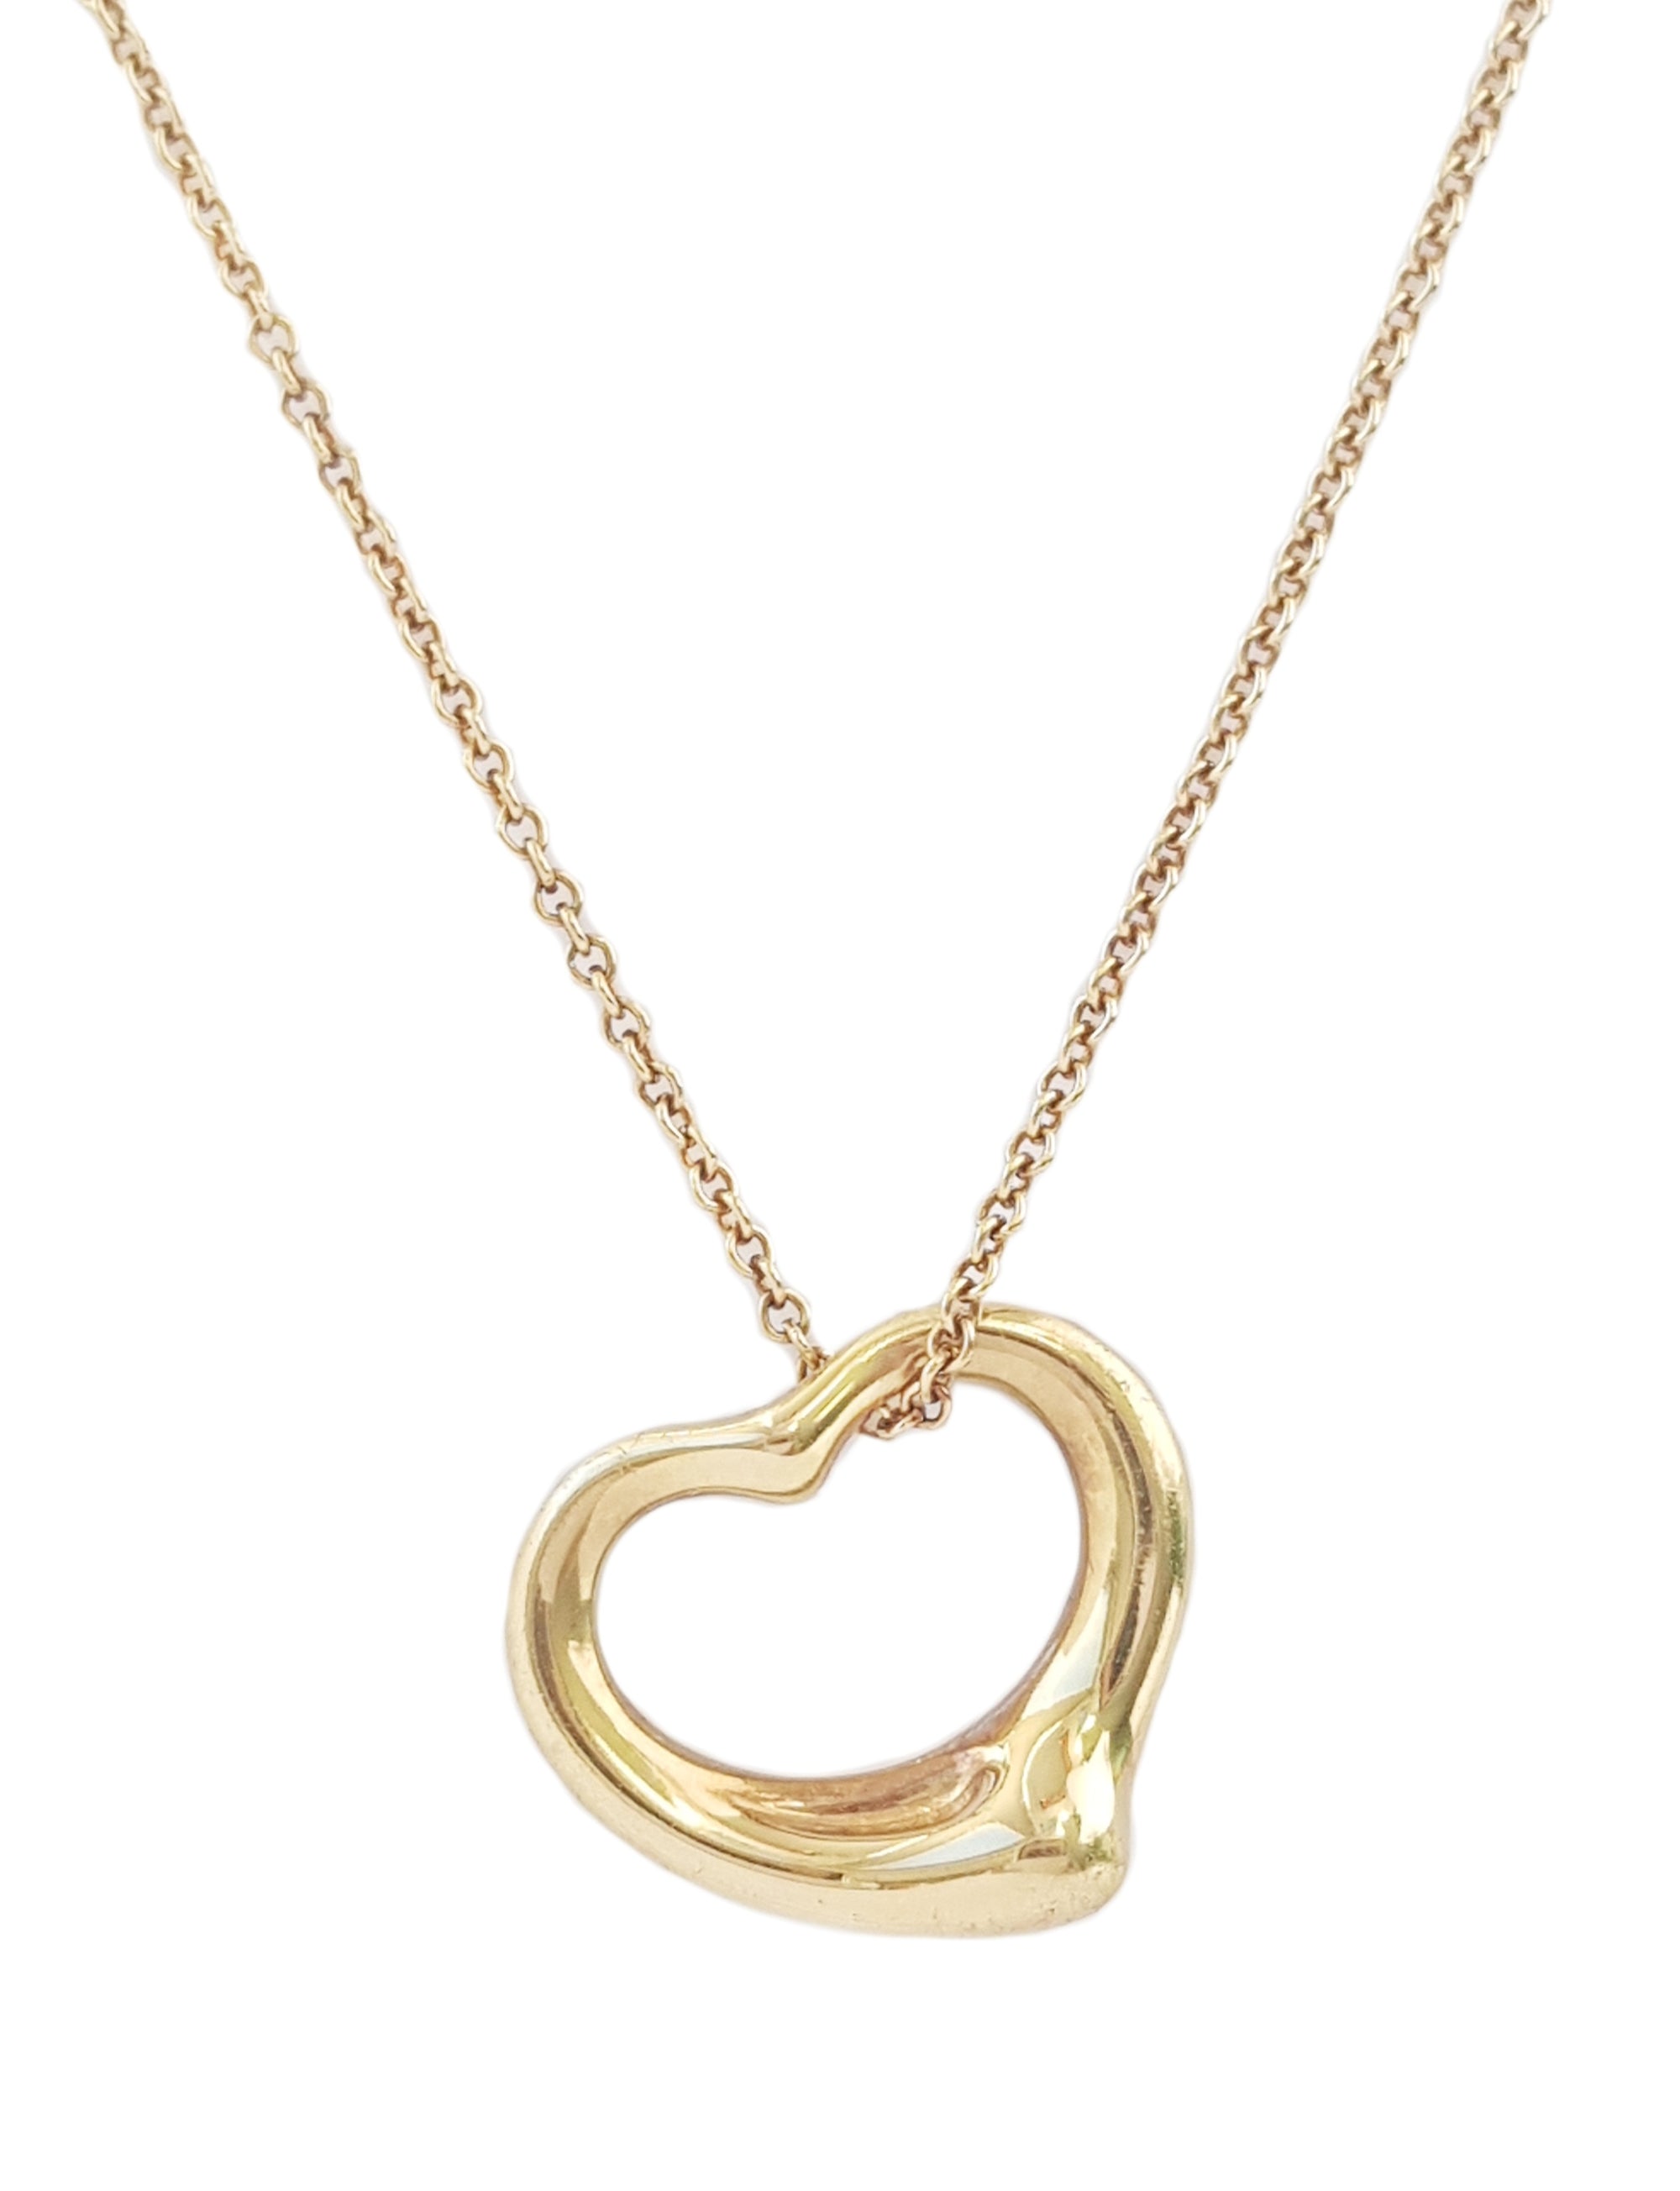 Tiffany & Co. Elsa Peretti 750 (Gold) Open Heart Necklace